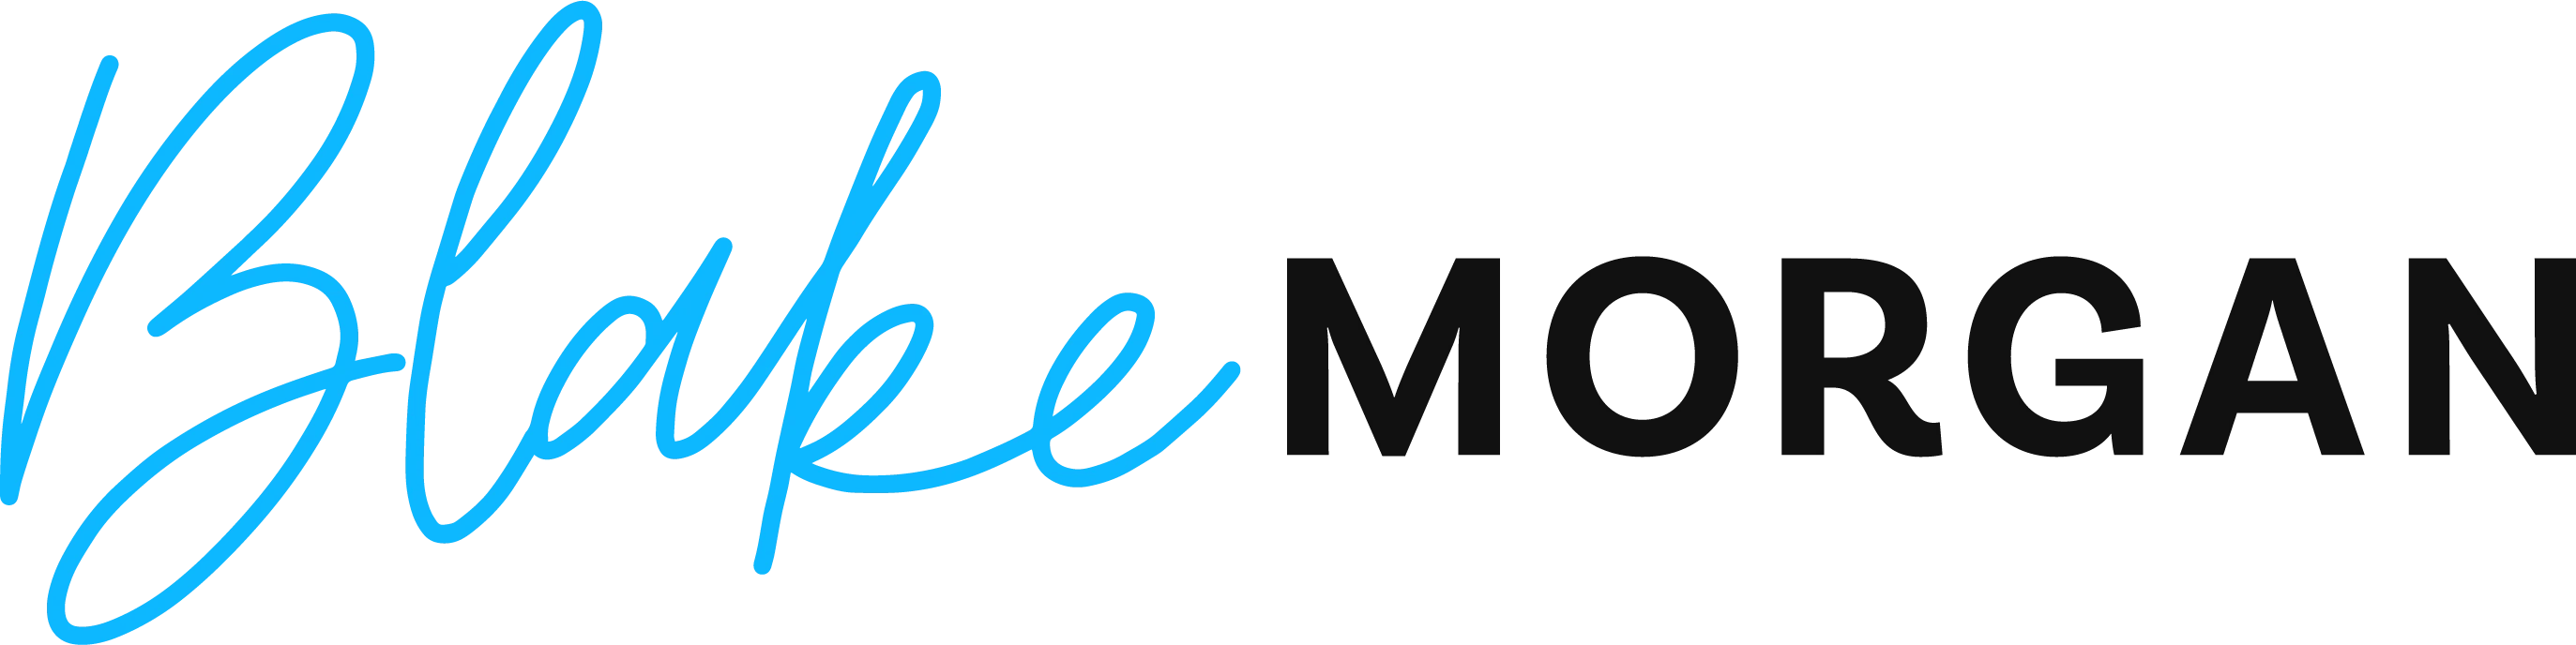 Blake Morgan Logo-image